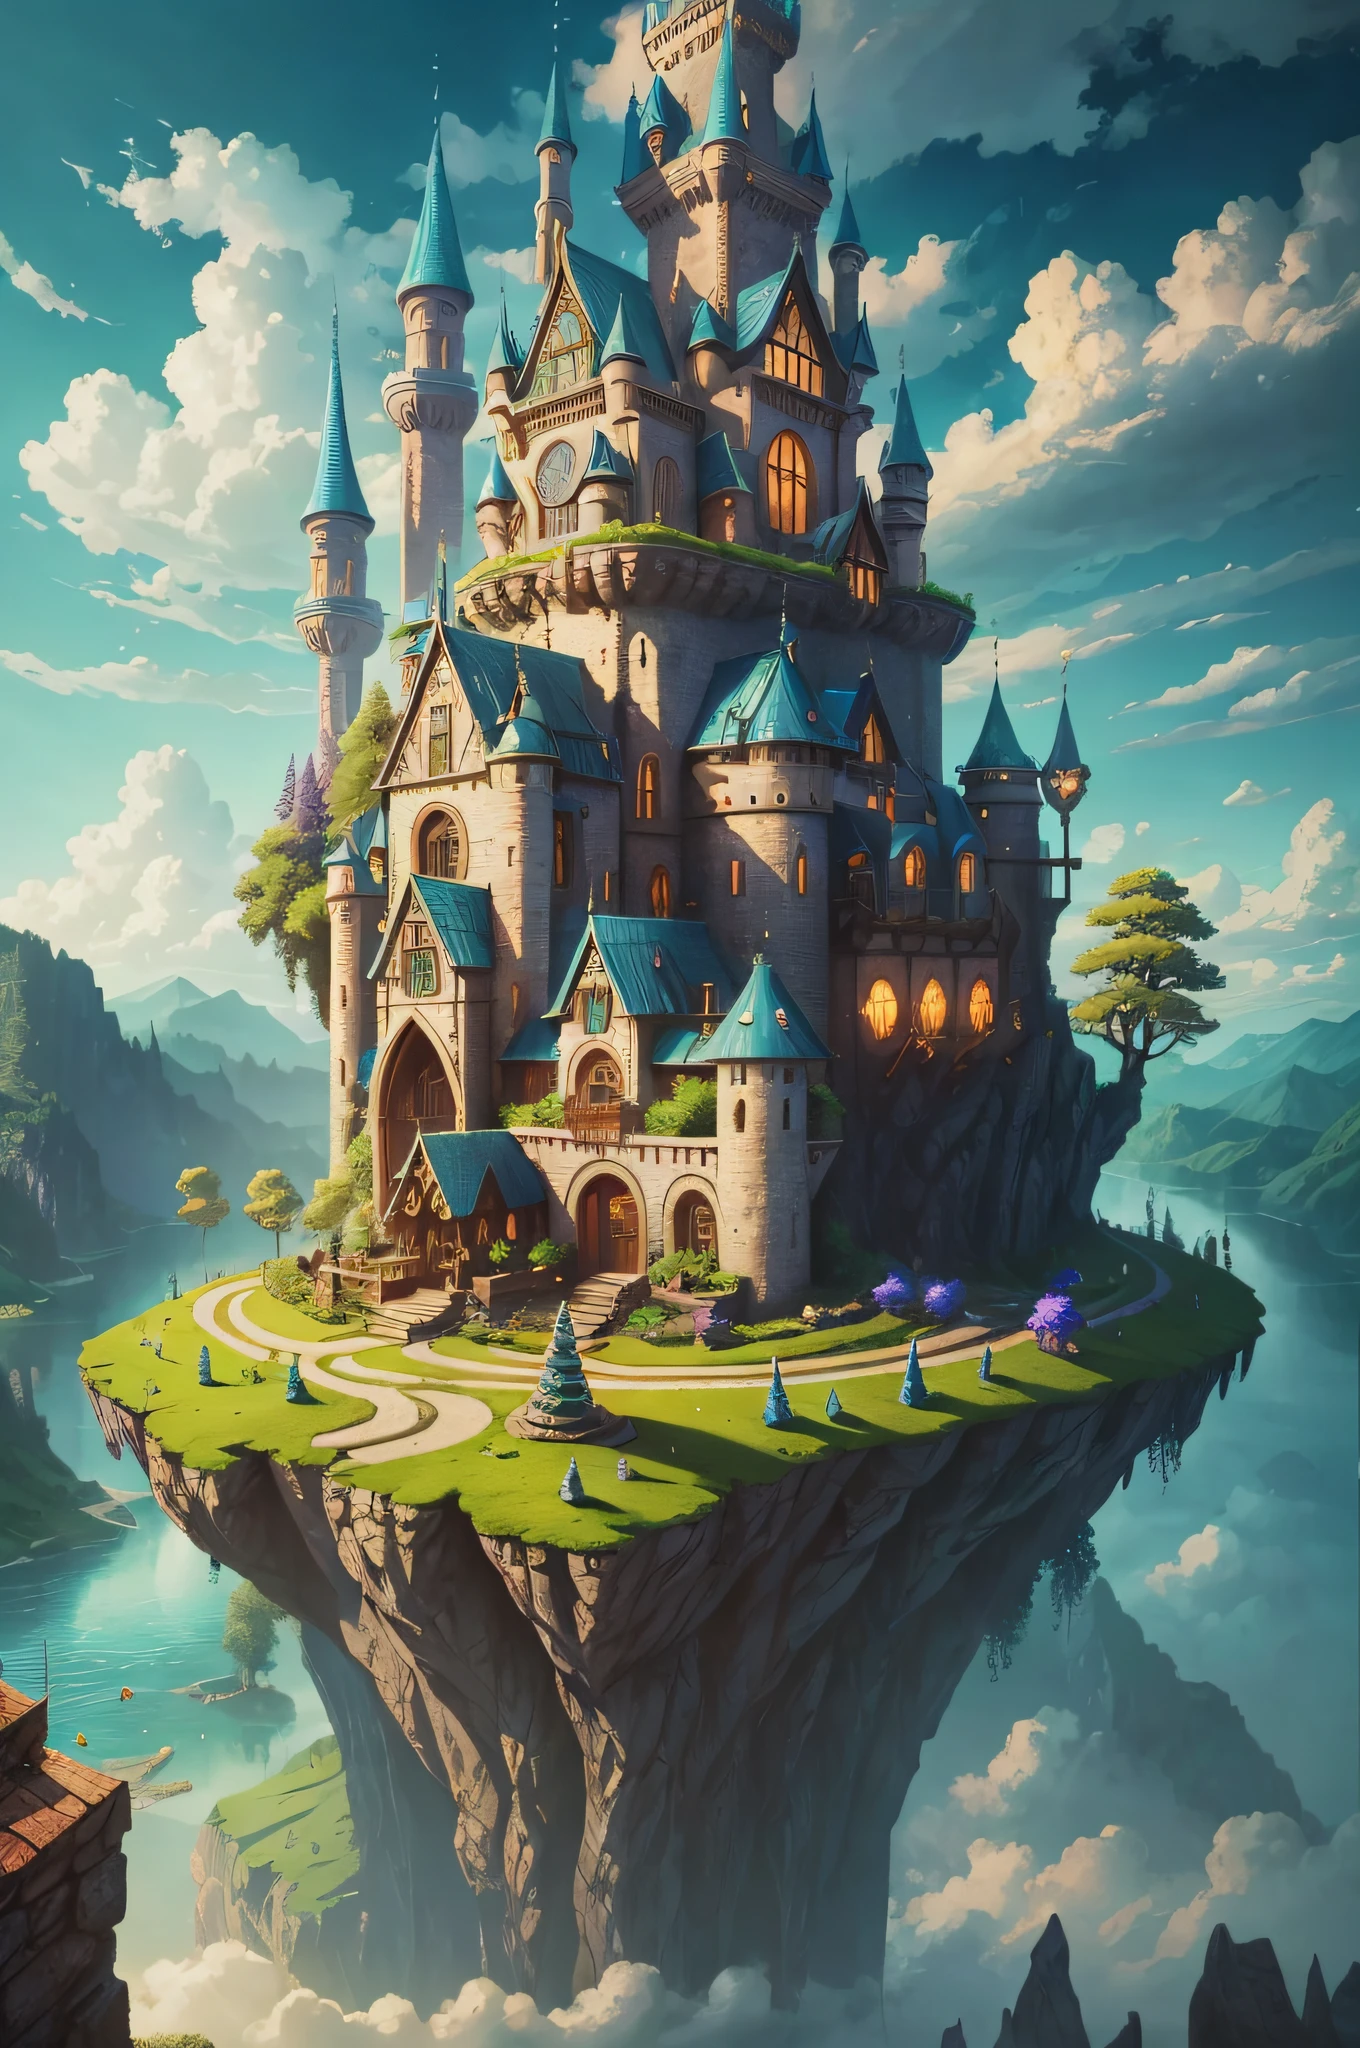 royaume des elfes, maison pleine de design, forêt, lac, ciel, des nuages, fantastique, sursaturé, surréaliste, style pixar, Haute résolution, artgerme, chef-d&#39;œuvre, Super détaillé, composition épique, haute qualité, la plus haute qualité , 4k --v6